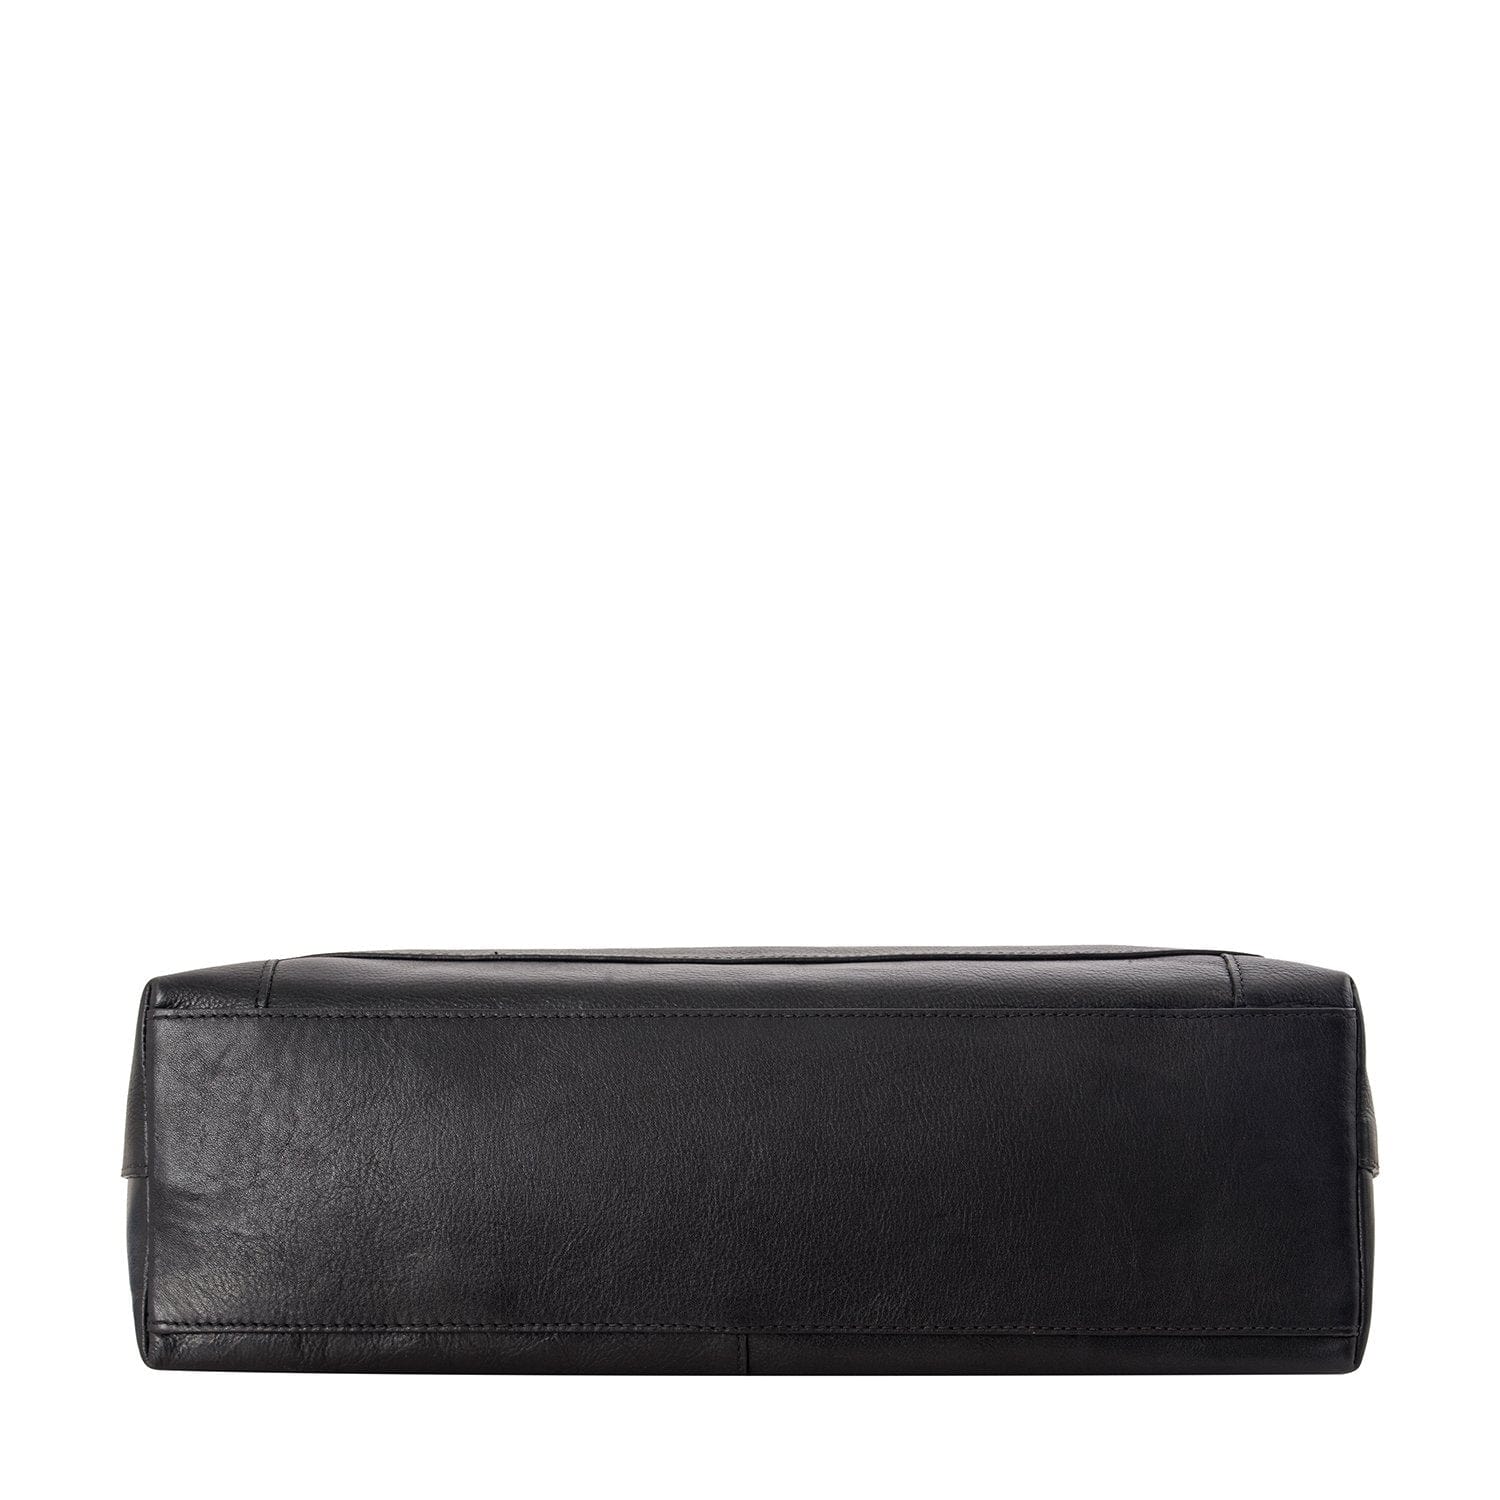 Sierra Leather Shoulder Bag With Sling Strap